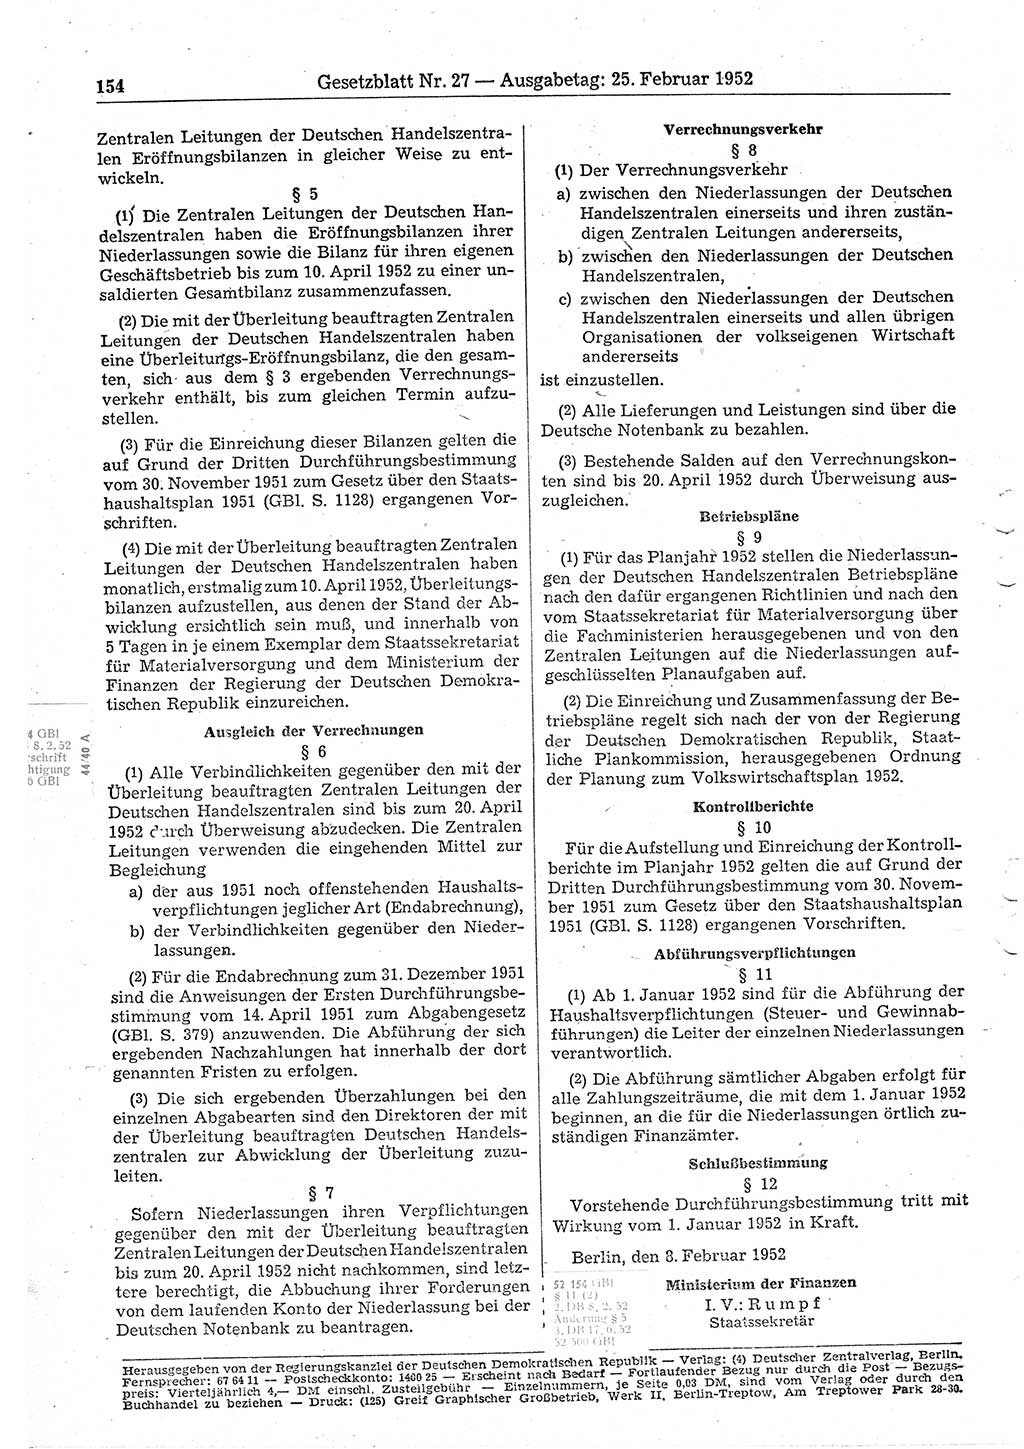 Gesetzblatt (GBl.) der Deutschen Demokratischen Republik (DDR) 1952, Seite 154 (GBl. DDR 1952, S. 154)